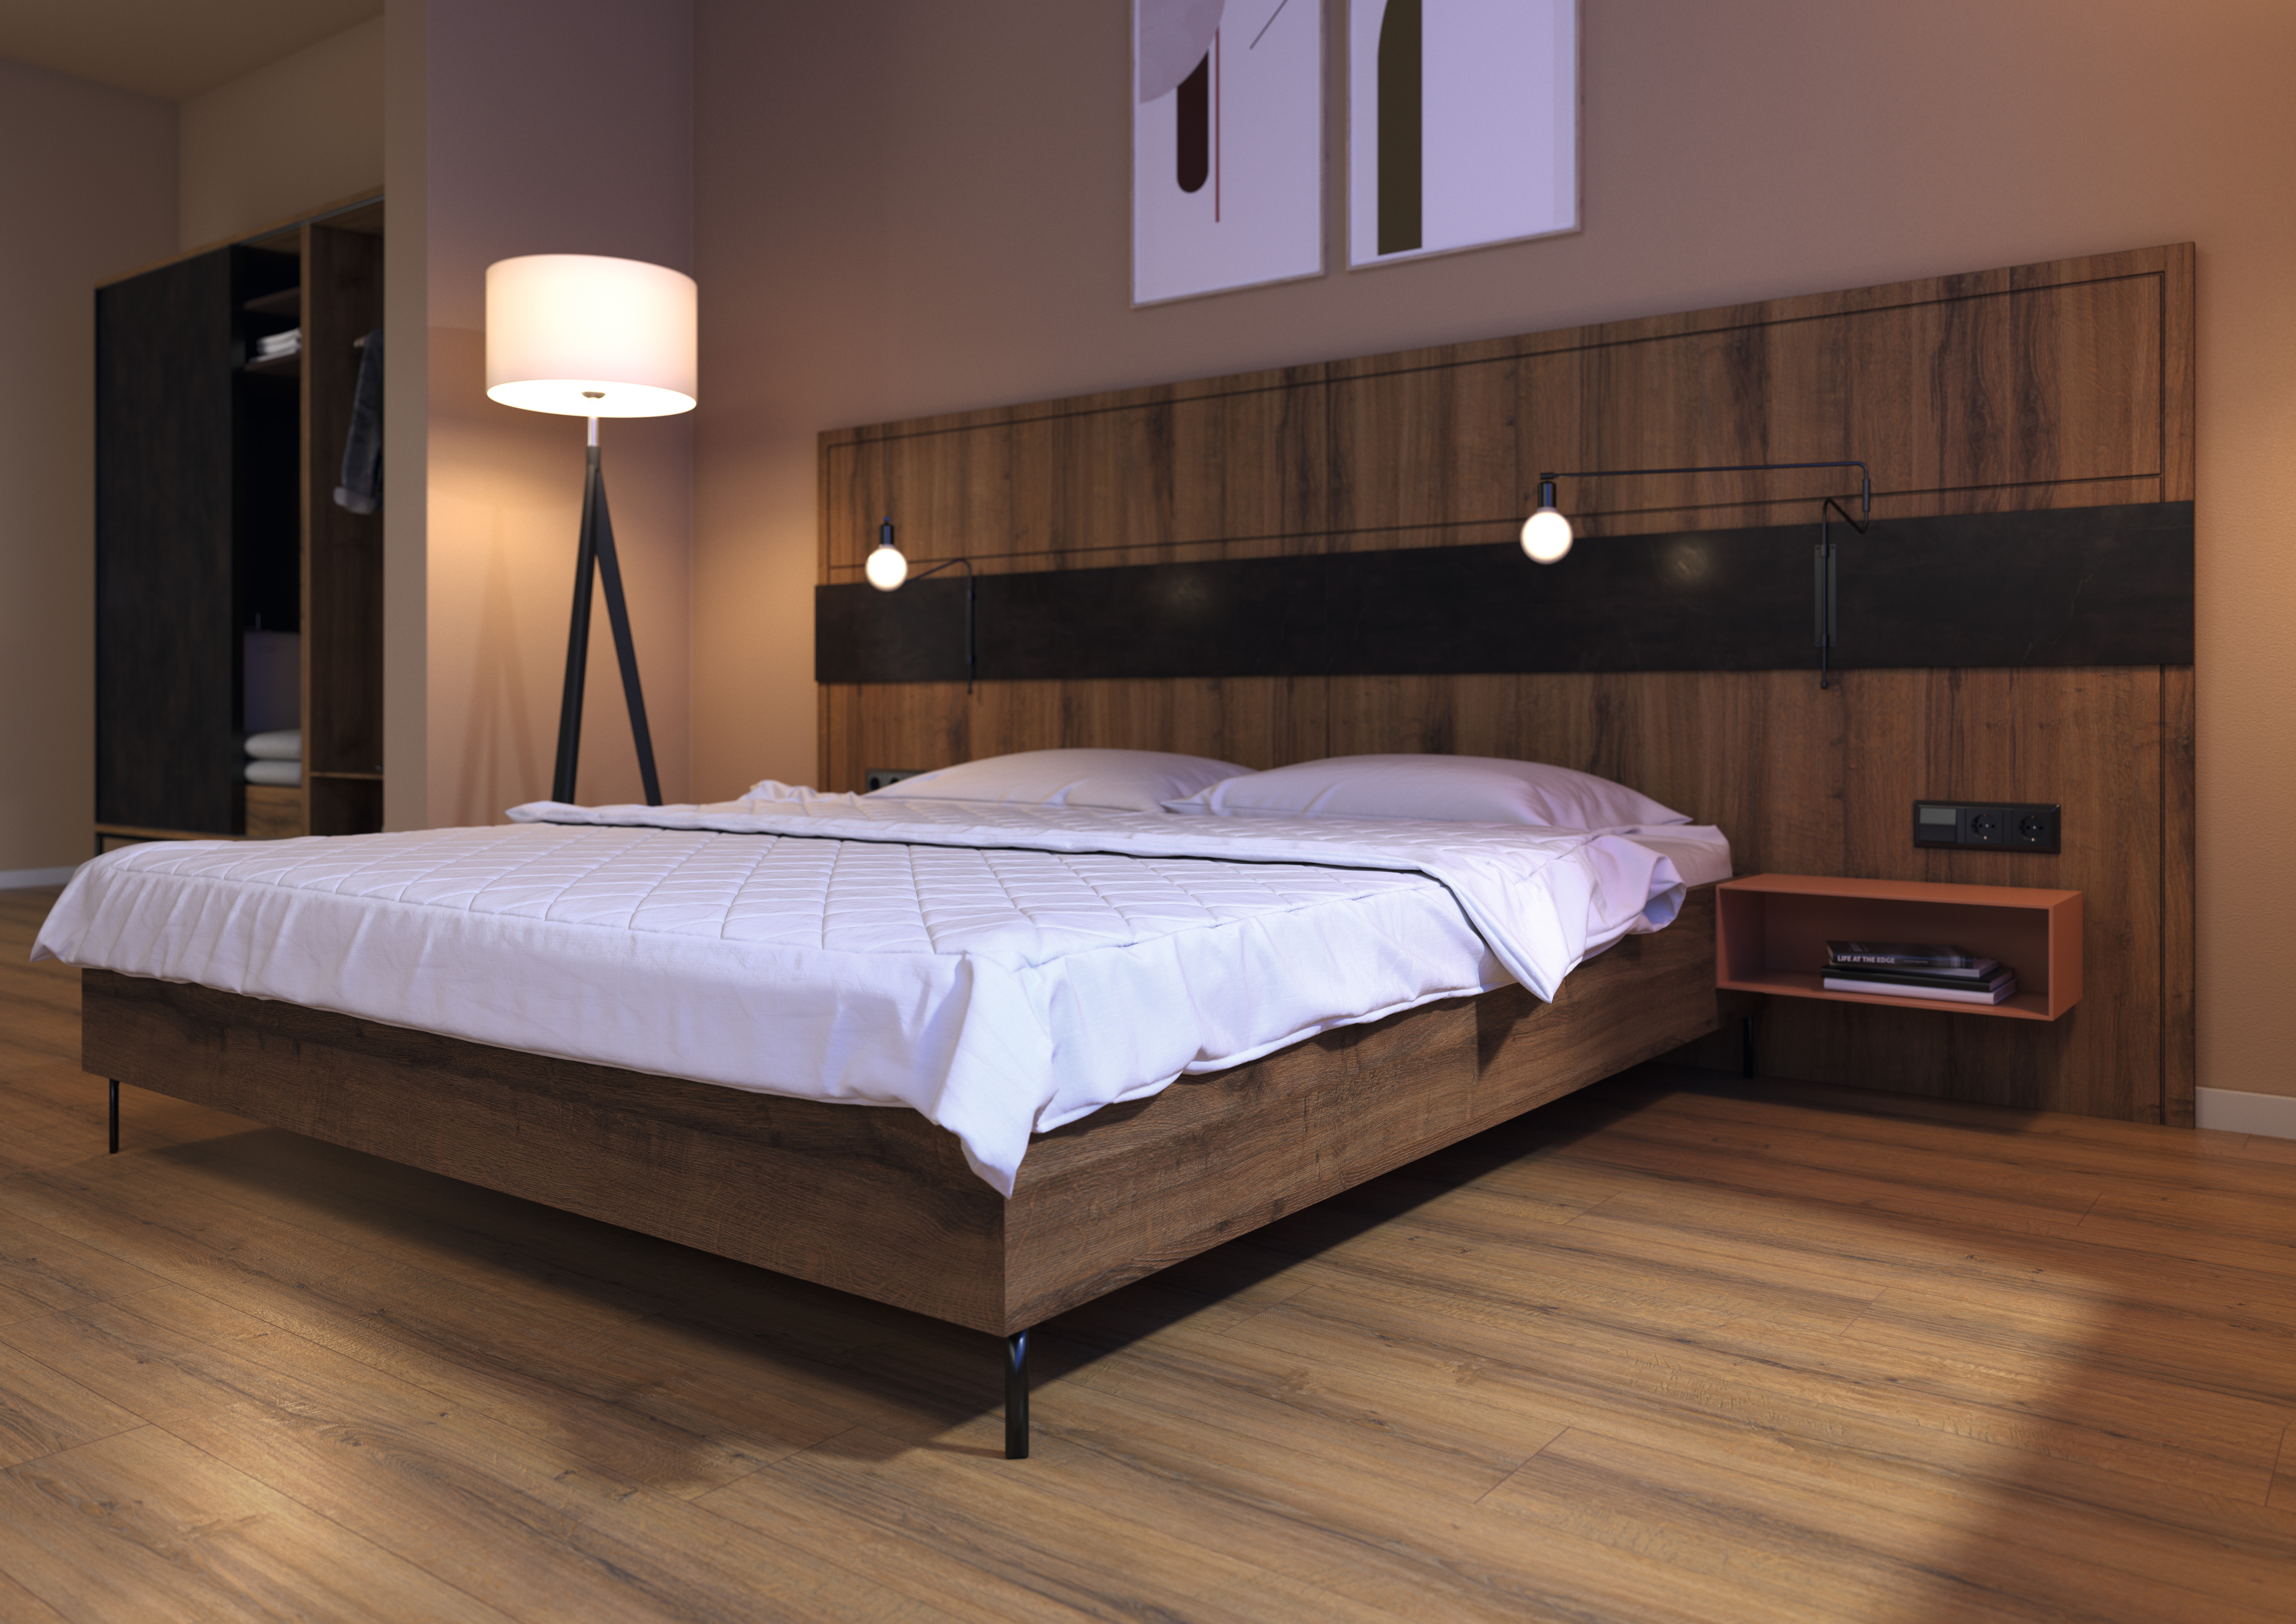 Decor Match в дизайні спальні: Дуб Шерман коньяк коричневий. Задня стіна спальні: Eurodekor МДФ | Основа ліжка: ДСП Eurodekor | Покриття для підлоги: Ламіноване покриття для підлоги Aqua+